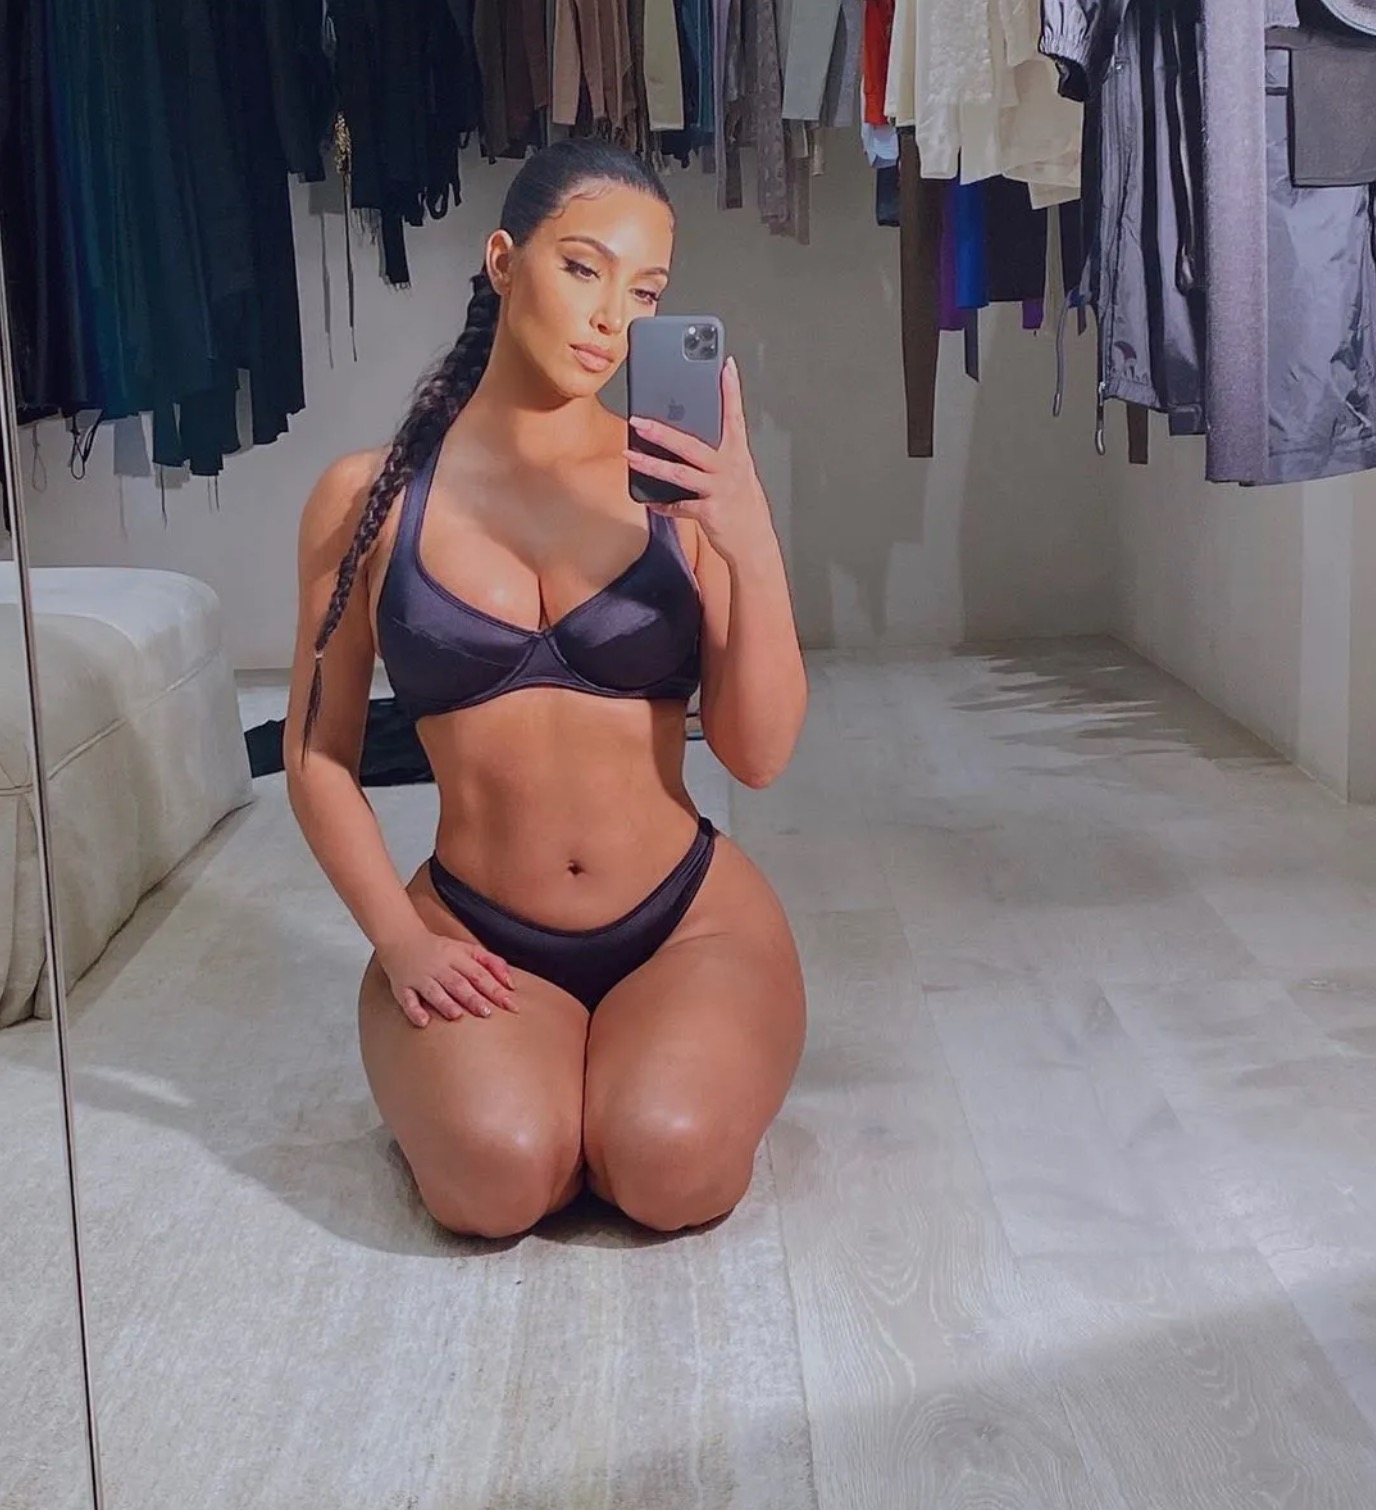 I Never Wore Underwear”: Kim Kardashian Speaks About SKIMS